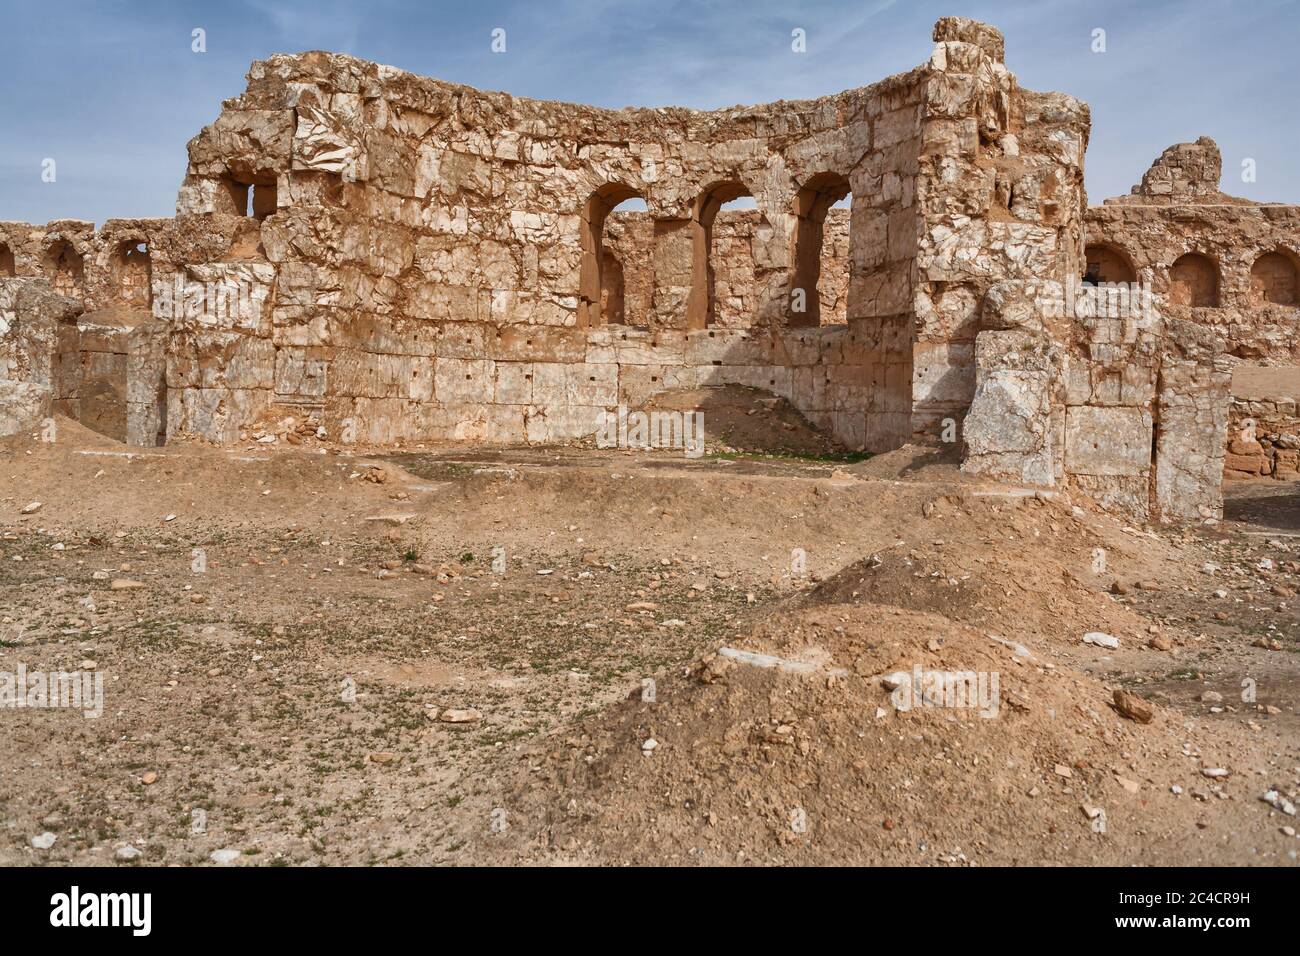 Resafa, Sergiopolis, nahe Ar Raqqah, römische und byzantinische Stadt in der Wüste, Syrien Stockfoto